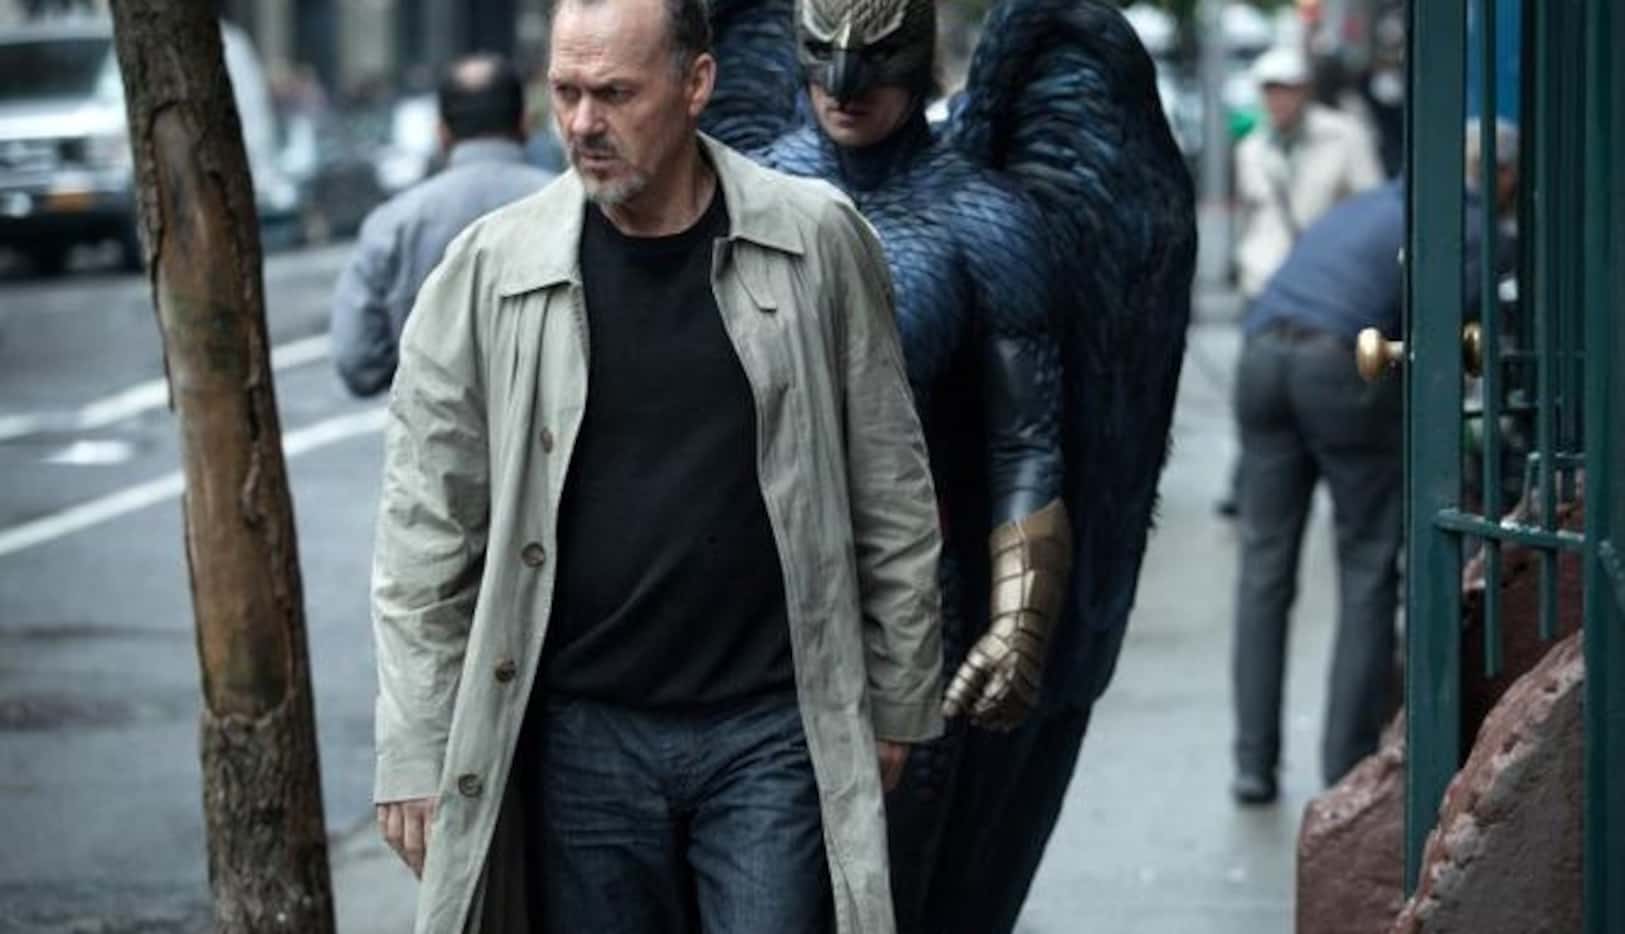 Michael Keaton vuela hacia el Oscar con su interpetación en "Birdman". (AP/FOX SEARCHLIGHT)
